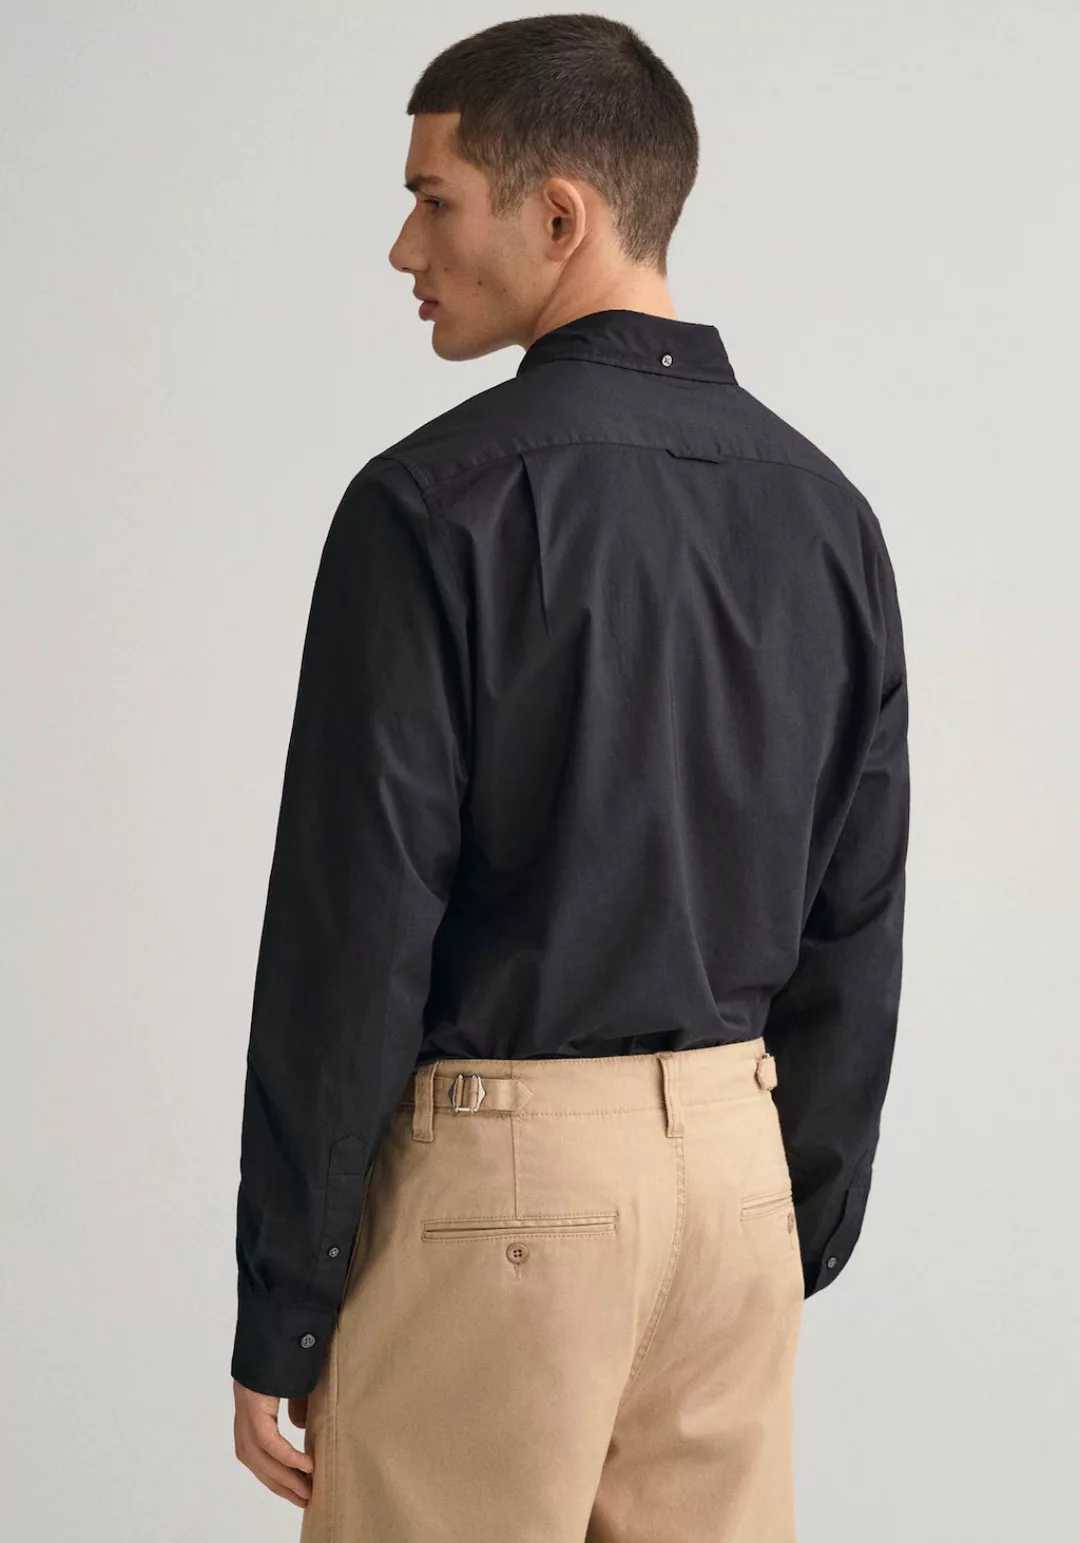 Gant Langarmhemd "Slim Fit Popeline Hemd leichte Baumwolle strapazierfähig günstig online kaufen